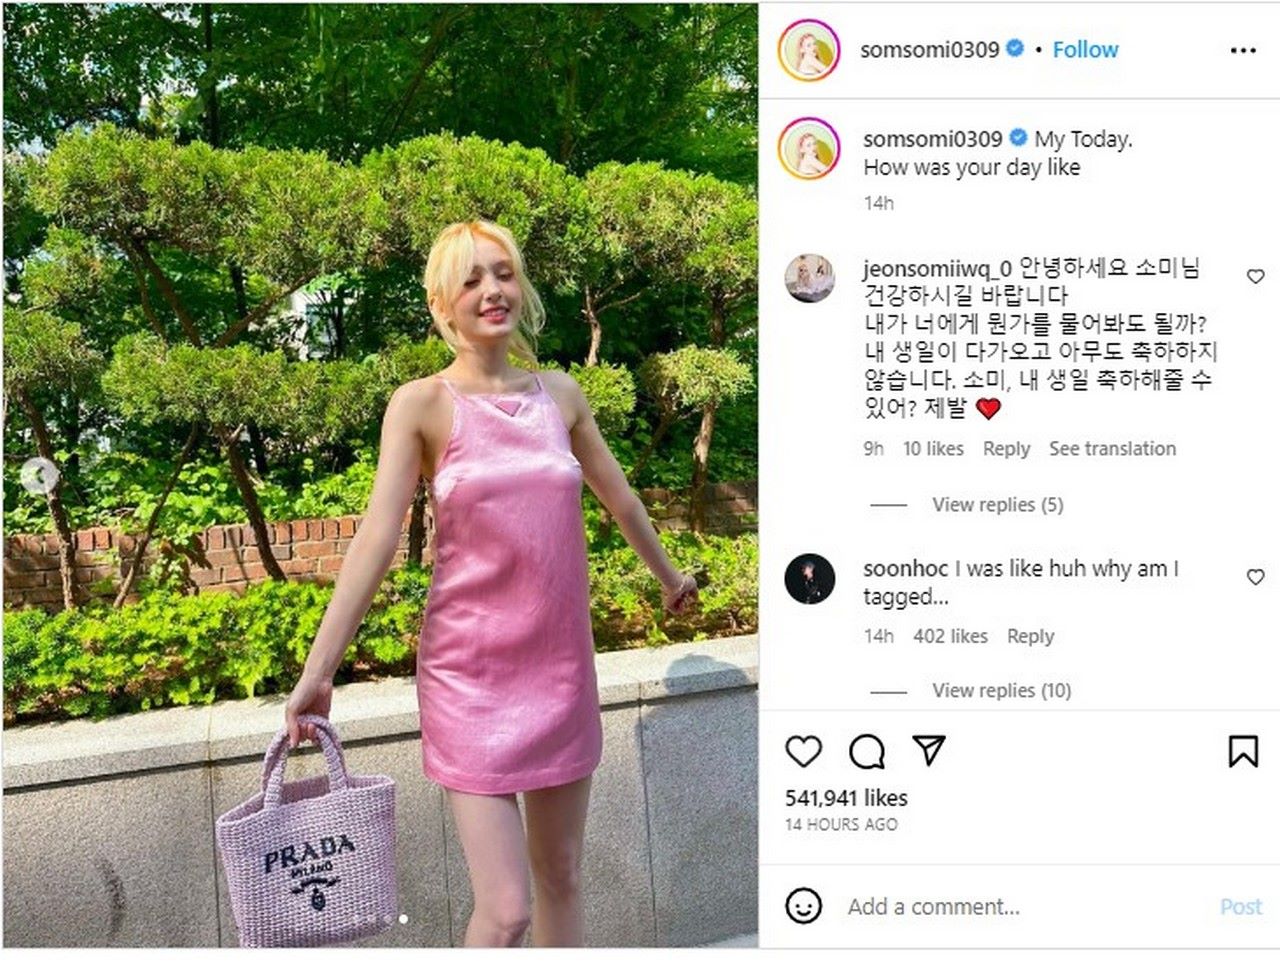 Kombinasi Rambut Pirang dan Dress Pink Menggemaskan, Jeon Somi Dipuji Bak Barbie Hidup